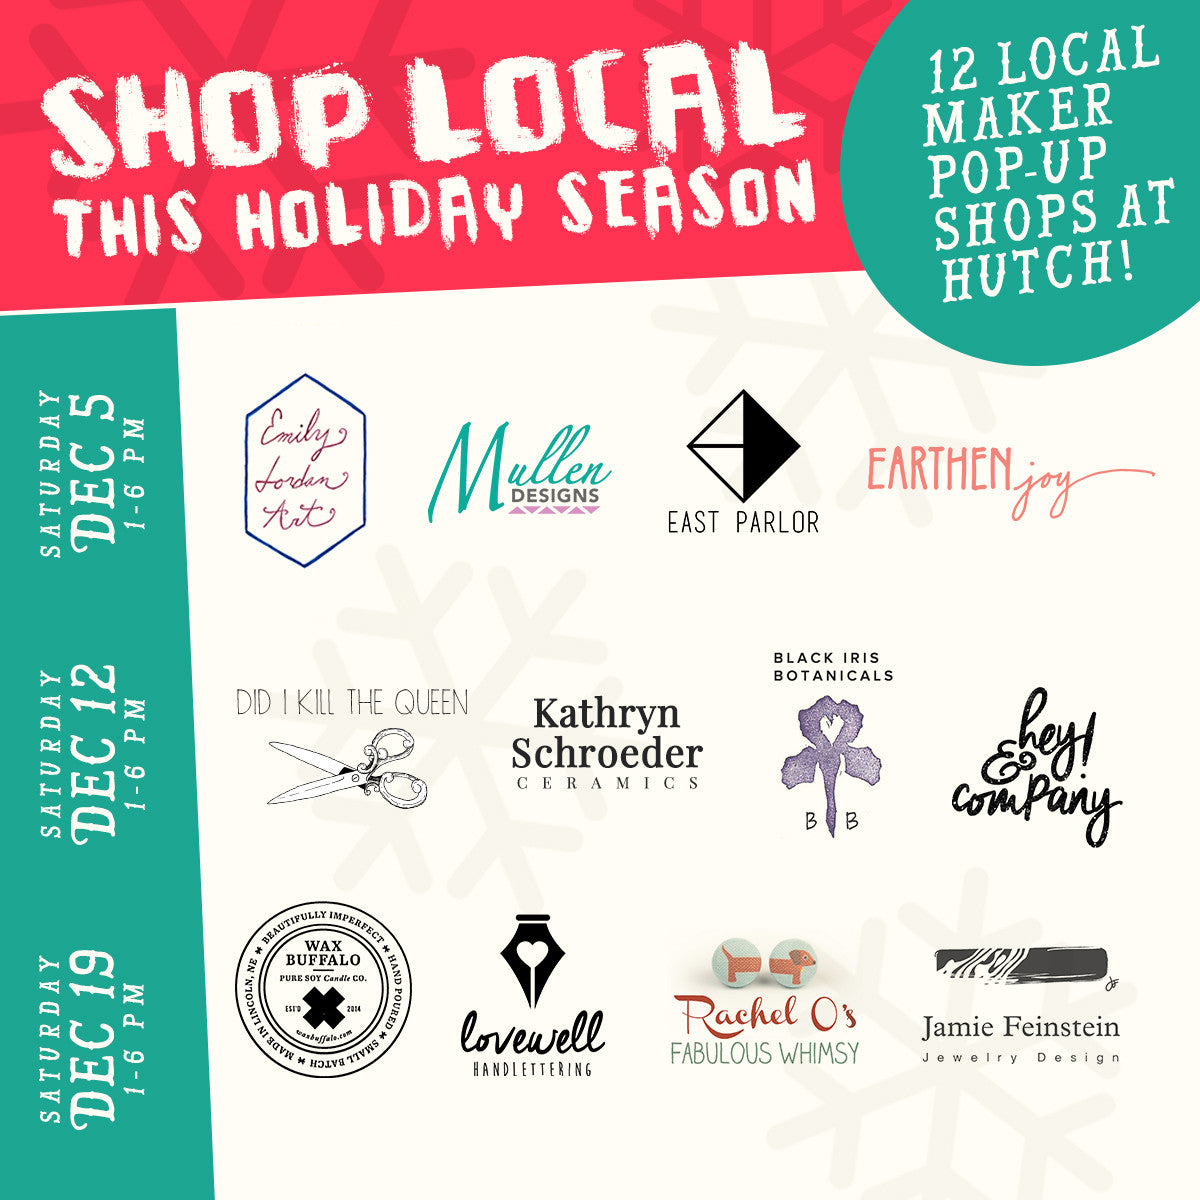 Shop local this holiday season at hutch!